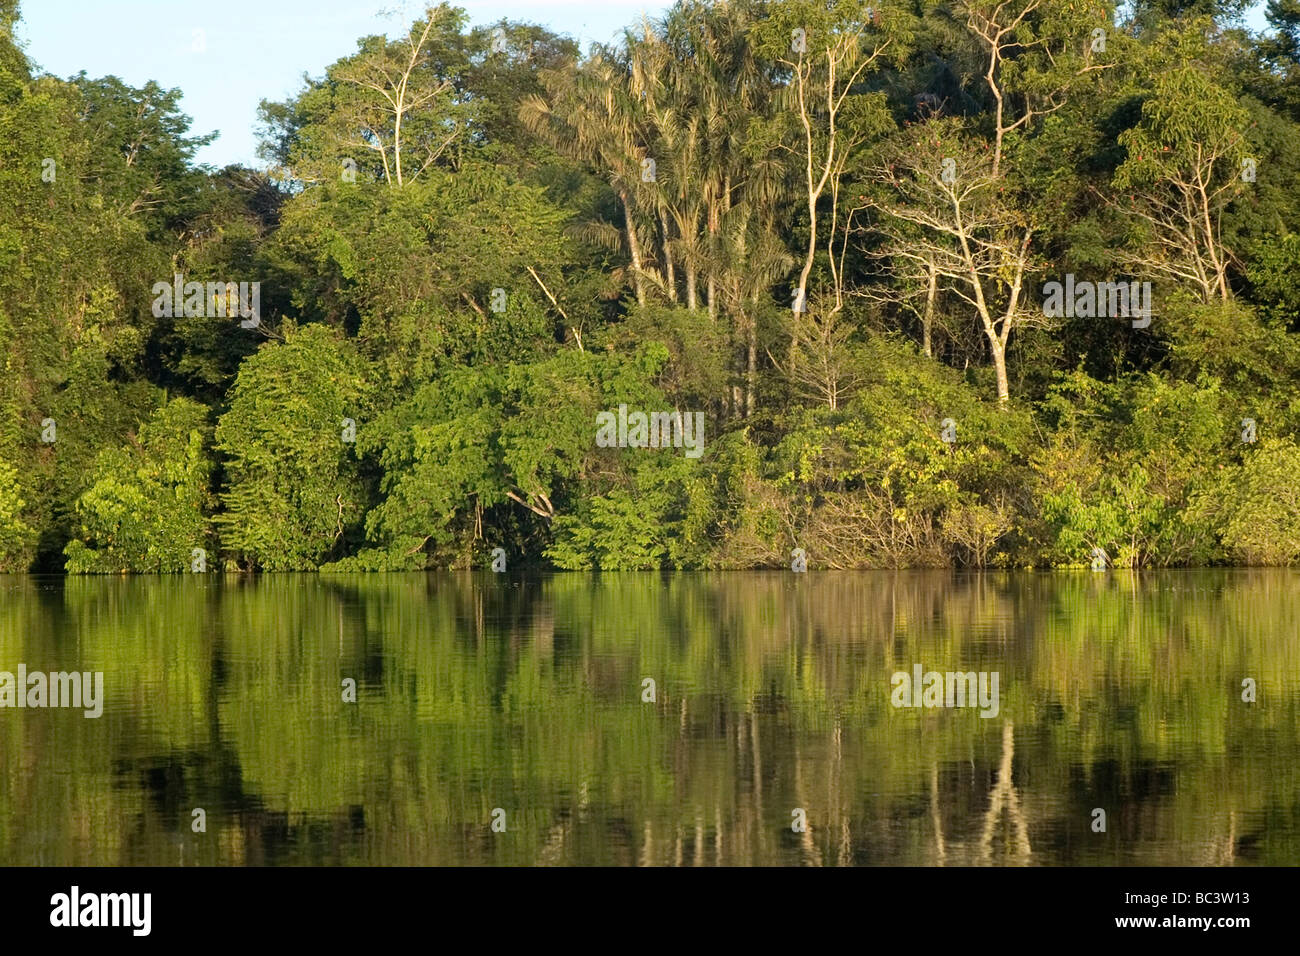 Inondata Foresta Pluviale Tropicale - Brasile Foto Stock